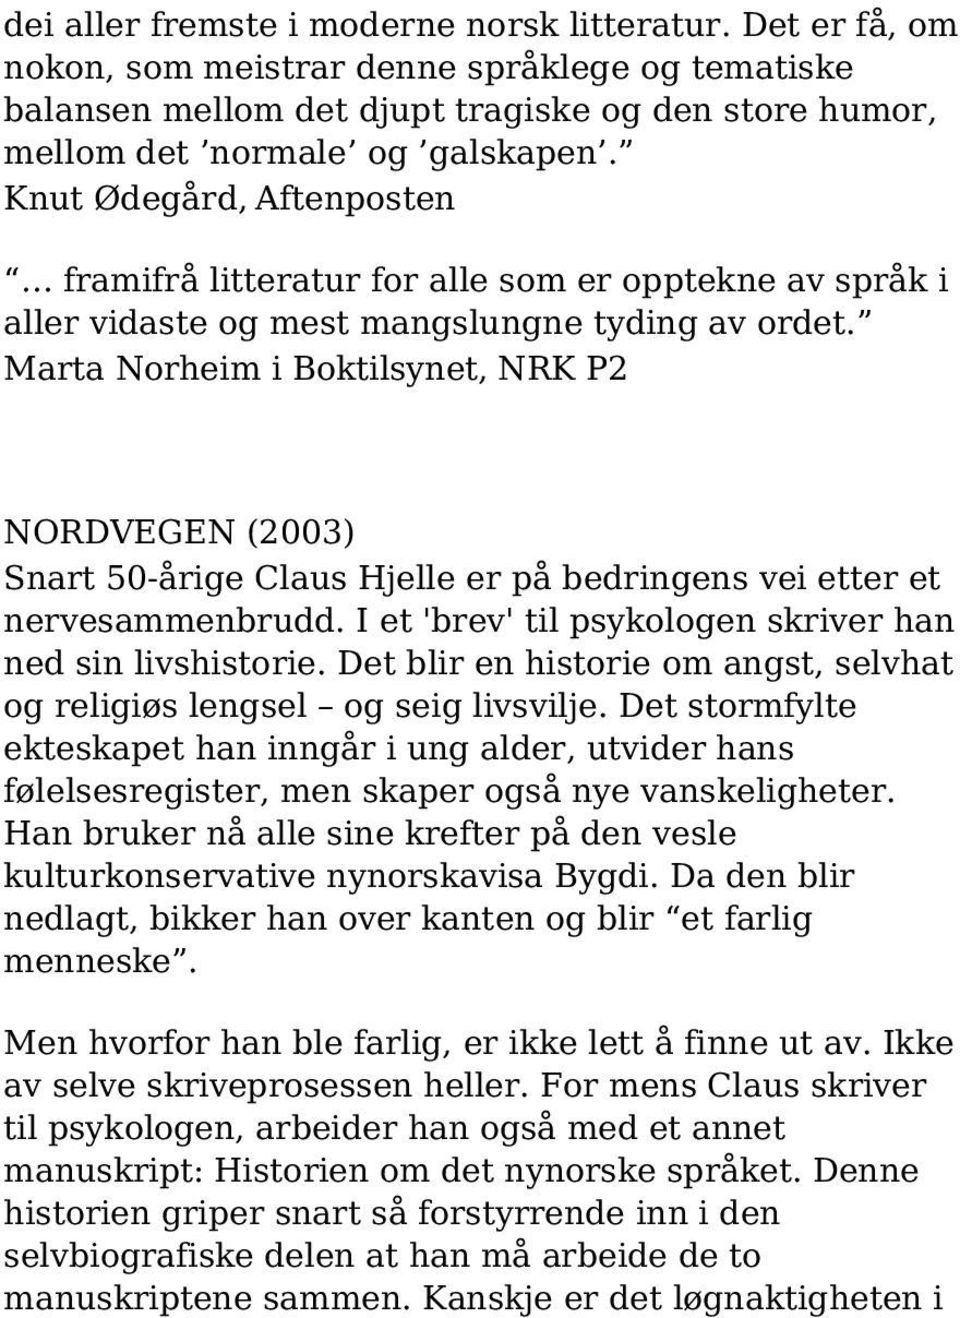 Marta Norheim i Boktilsynet, NRK P2 NORDVEGEN (2003) Snart 50-årige Claus Hjelle er på bedringens vei etter et nervesammenbrudd. I et 'brev' til psykologen skriver han ned sin livshistorie.